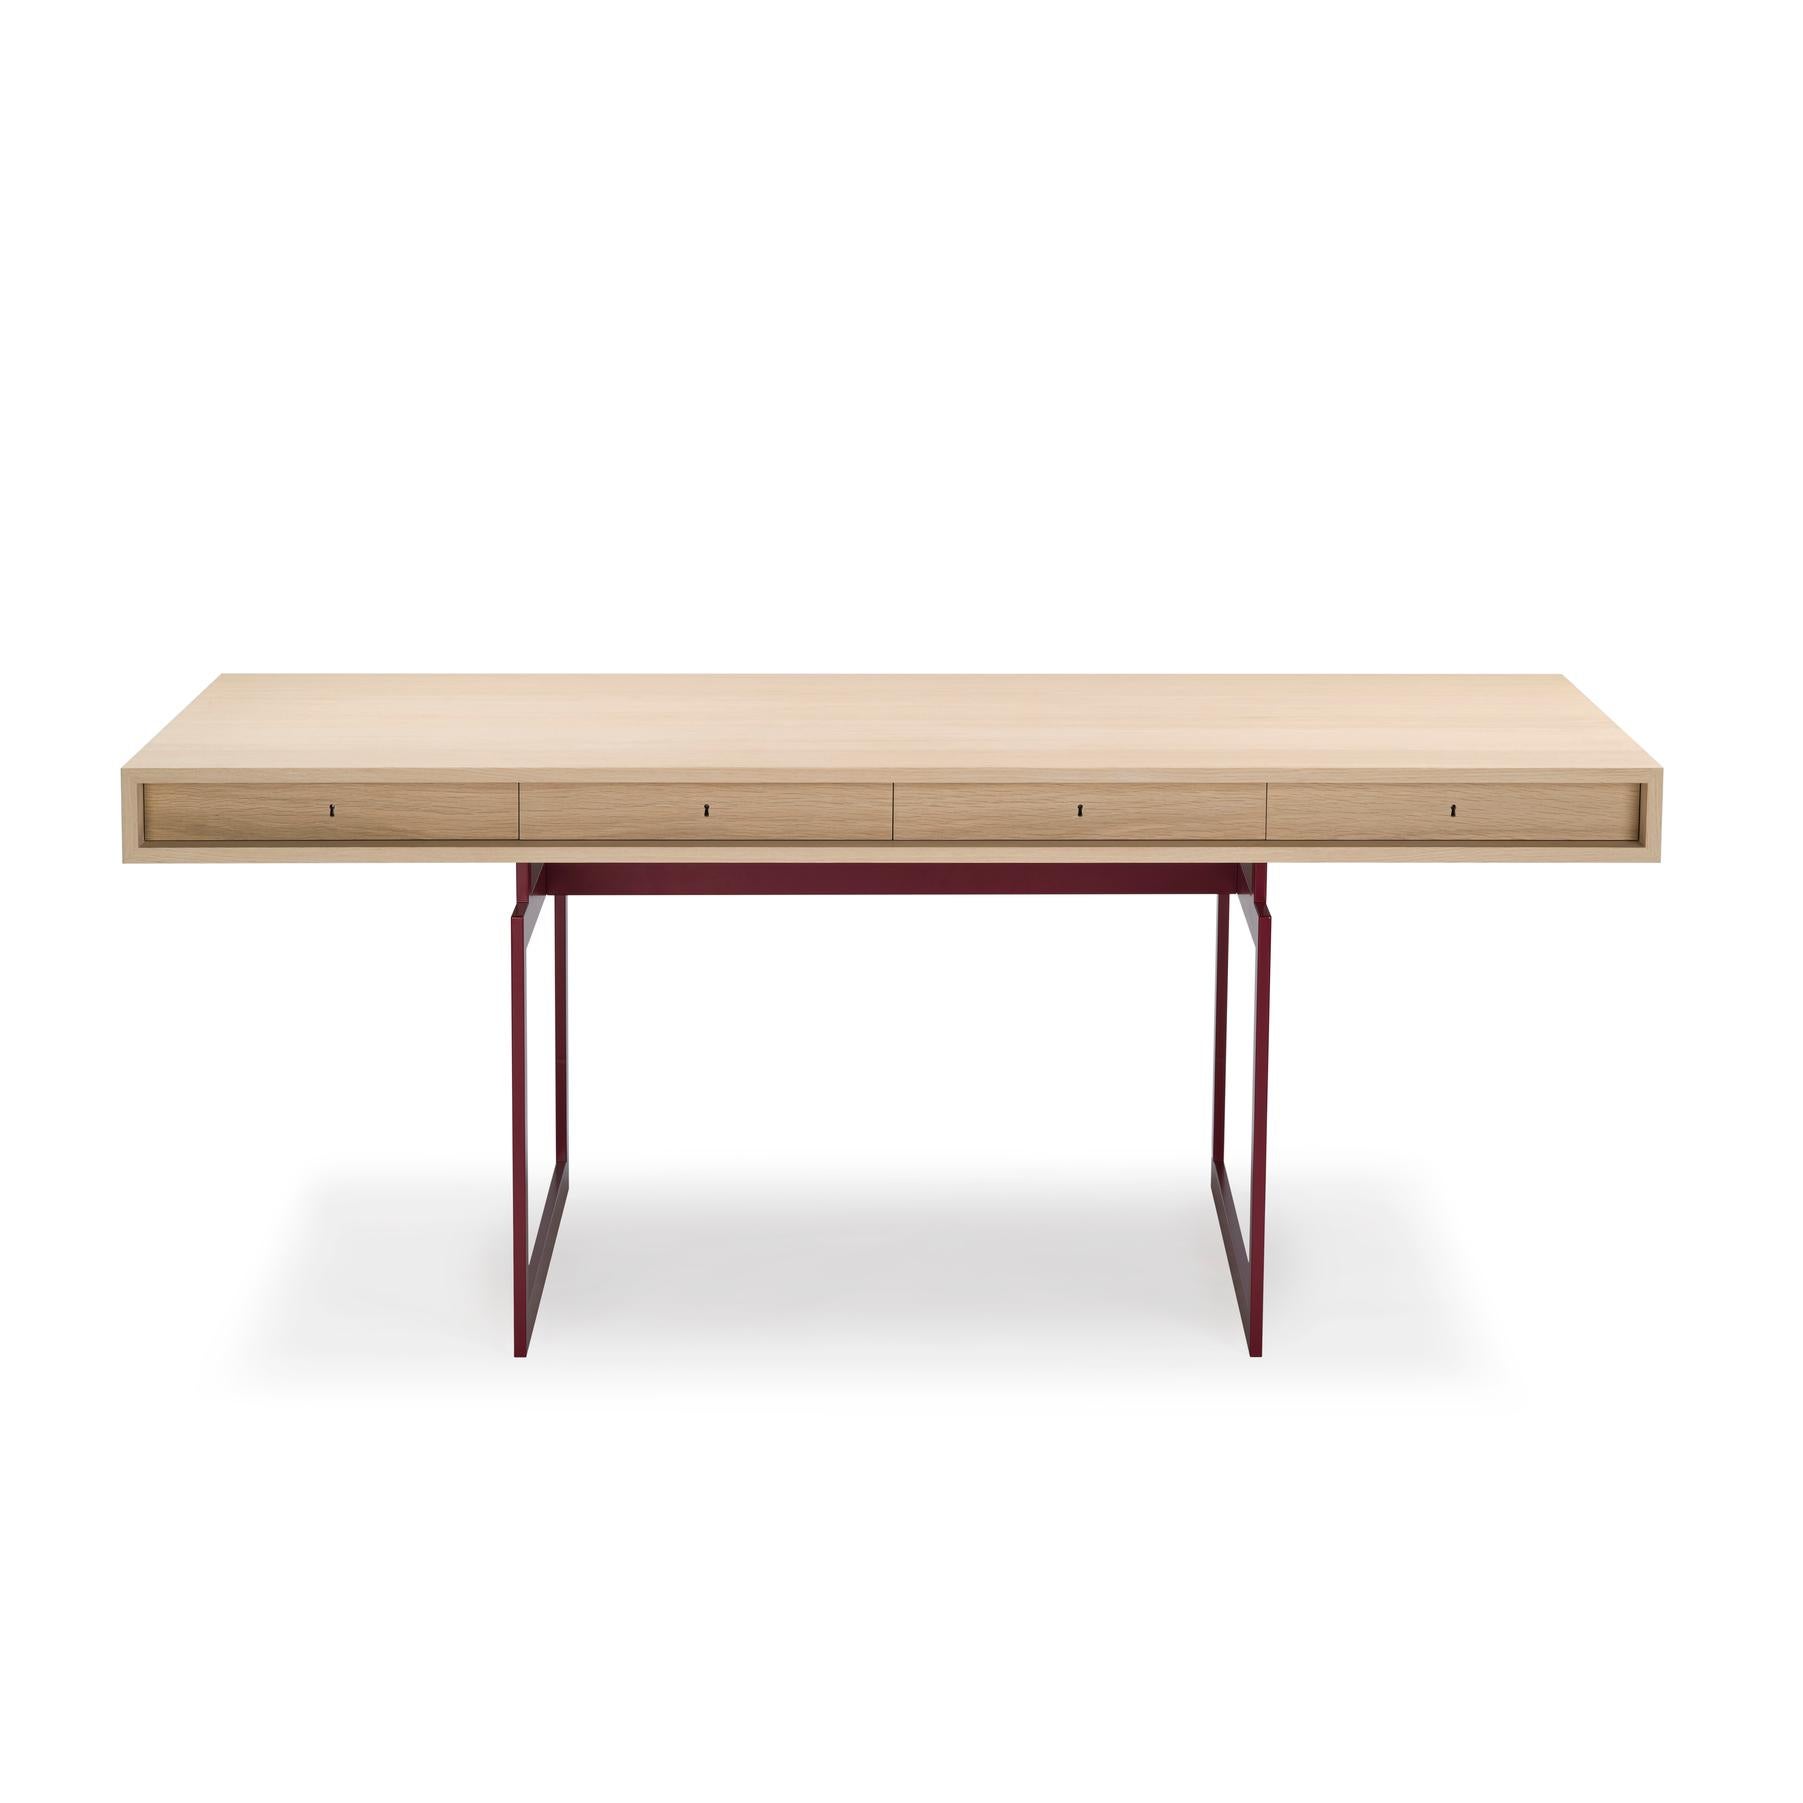 Danish Bodil Kjær Office Desk Table, Wood and Steel by Karakter